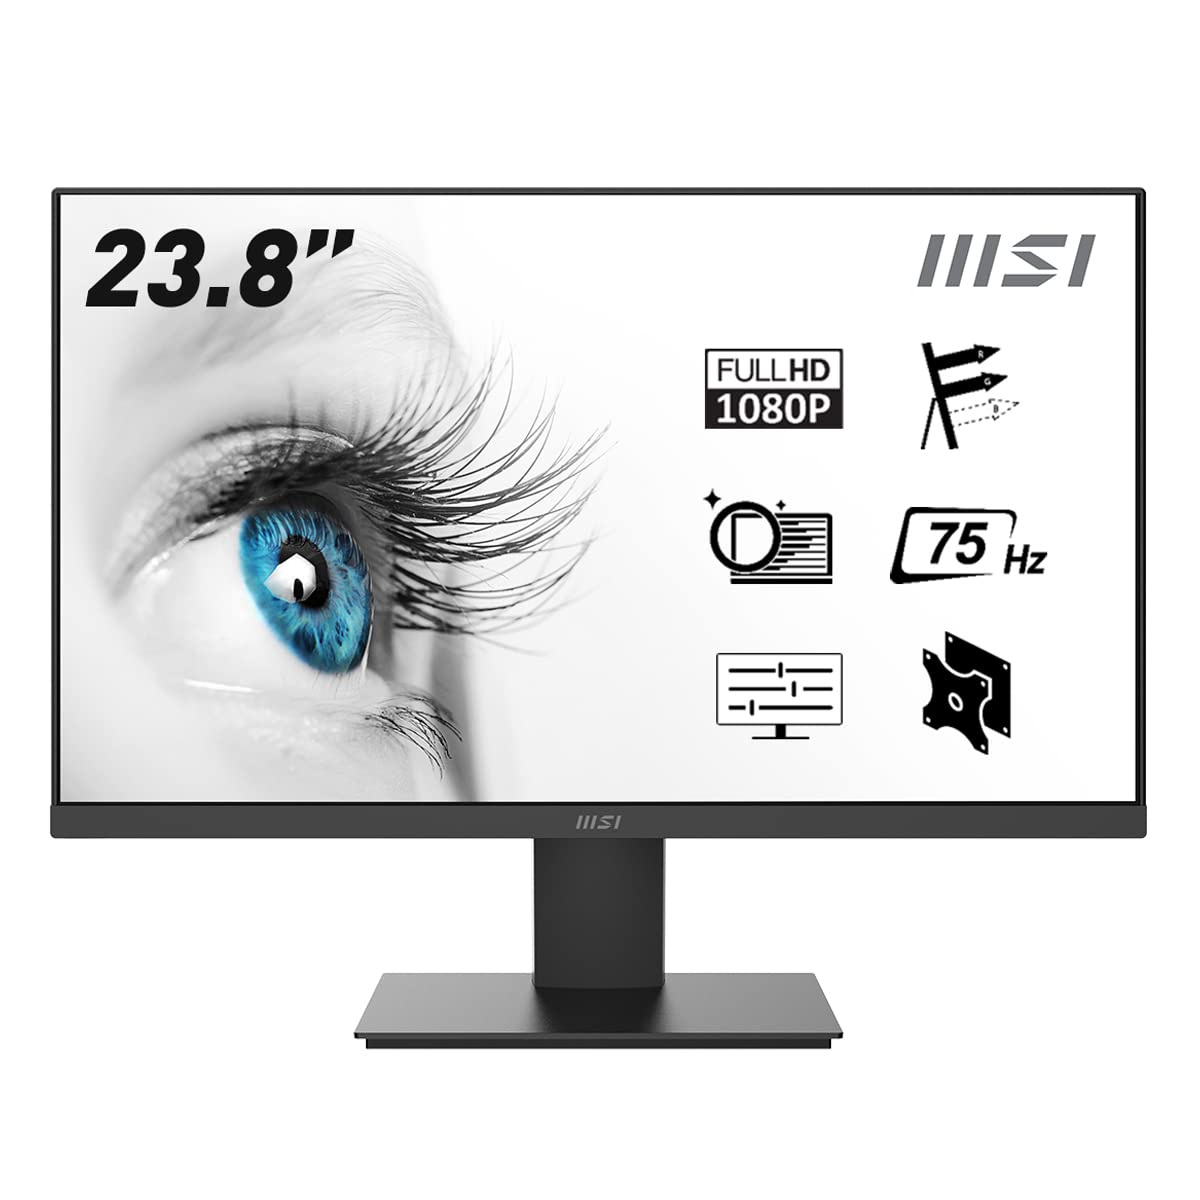 LG 27MP400-B - Monitor LG IPS (1920x1080p, 250 cd/m², 1000:1, NTSC 72%);  diag. 68,6cm; entradas: D-Sub x1, HDMI x1; diseño virtualmente sin bordes.